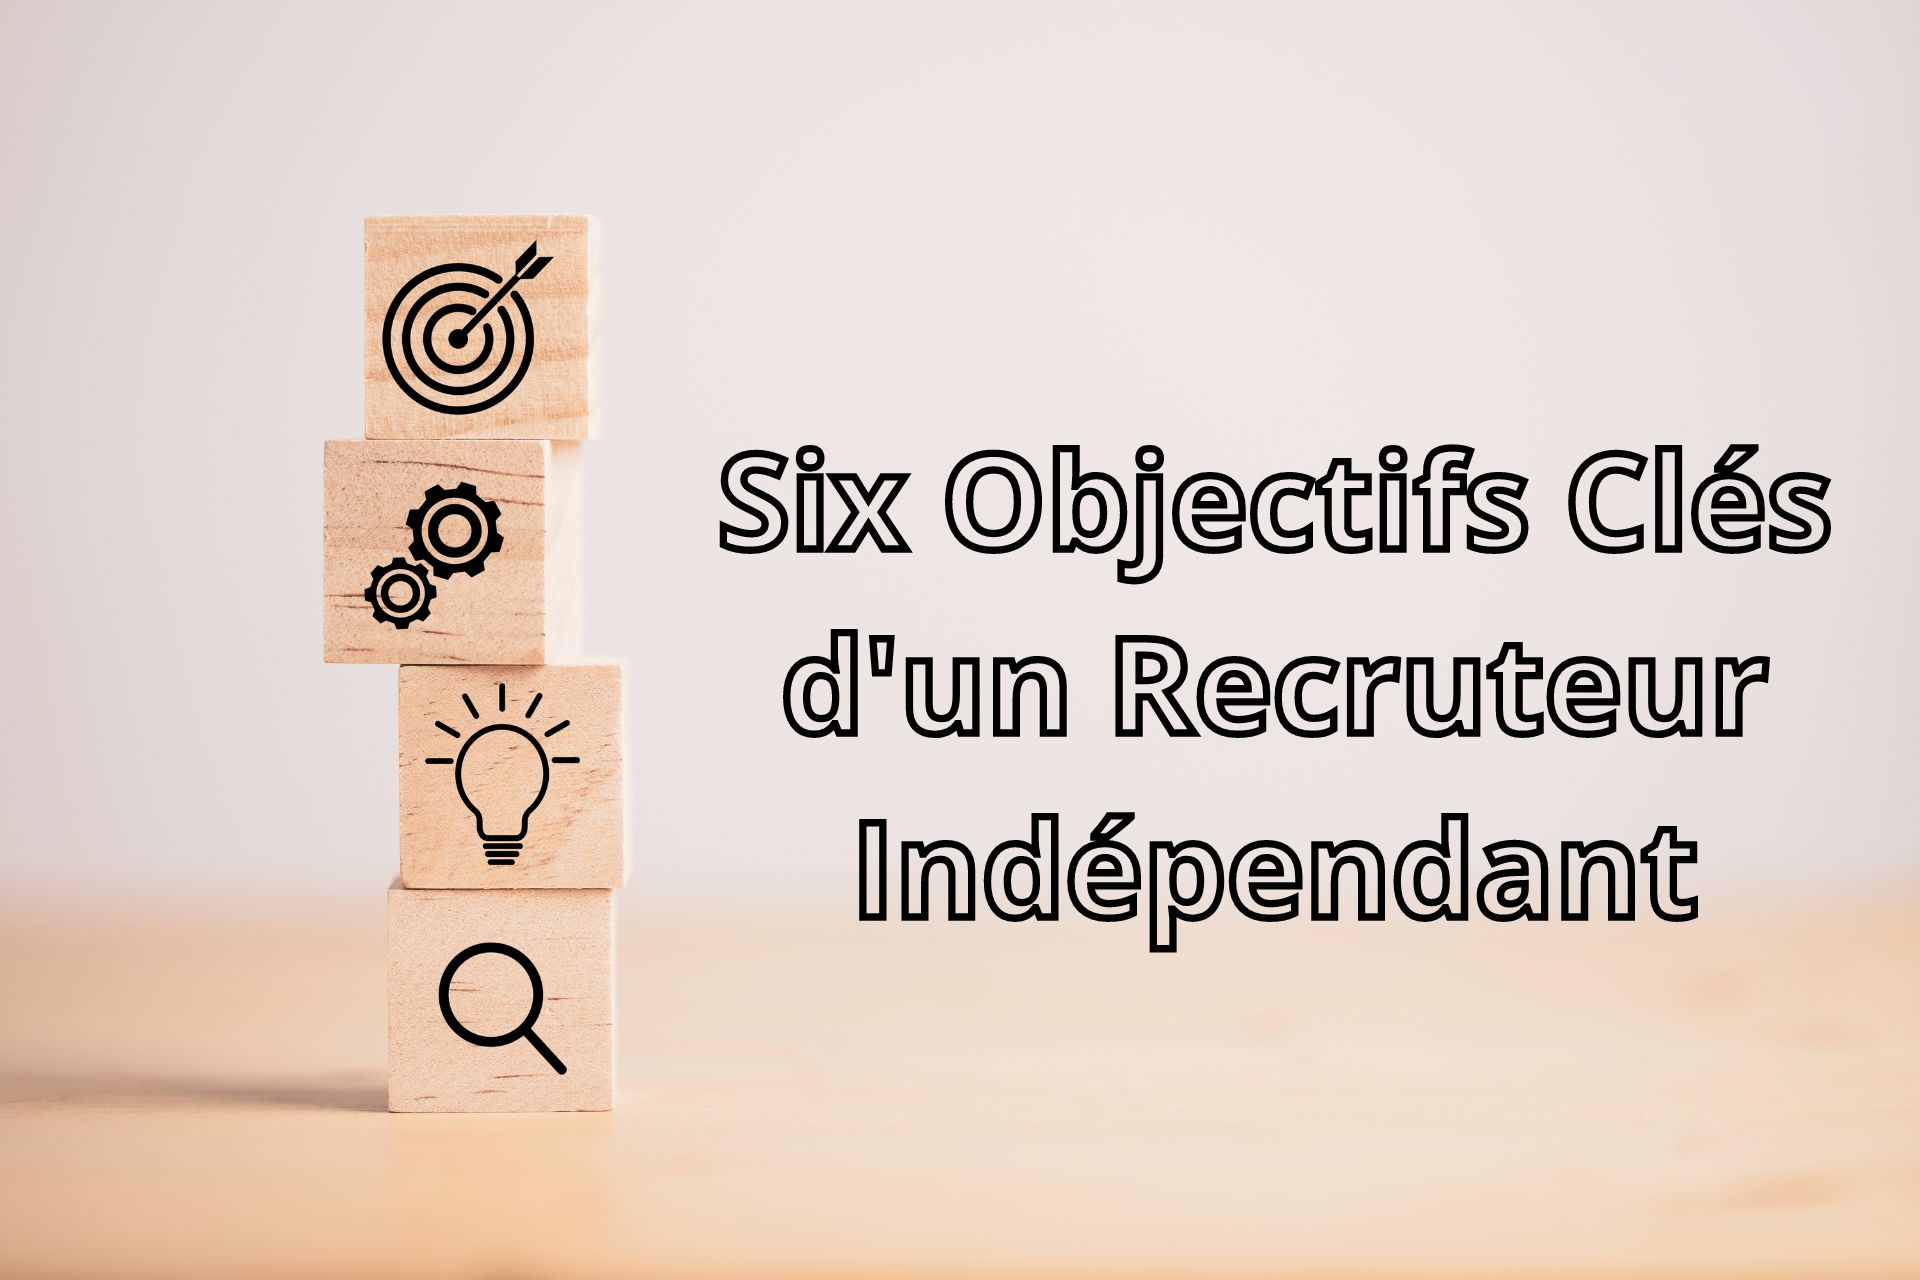 Six Objectifs Clés d'un Recruteur Indépendant